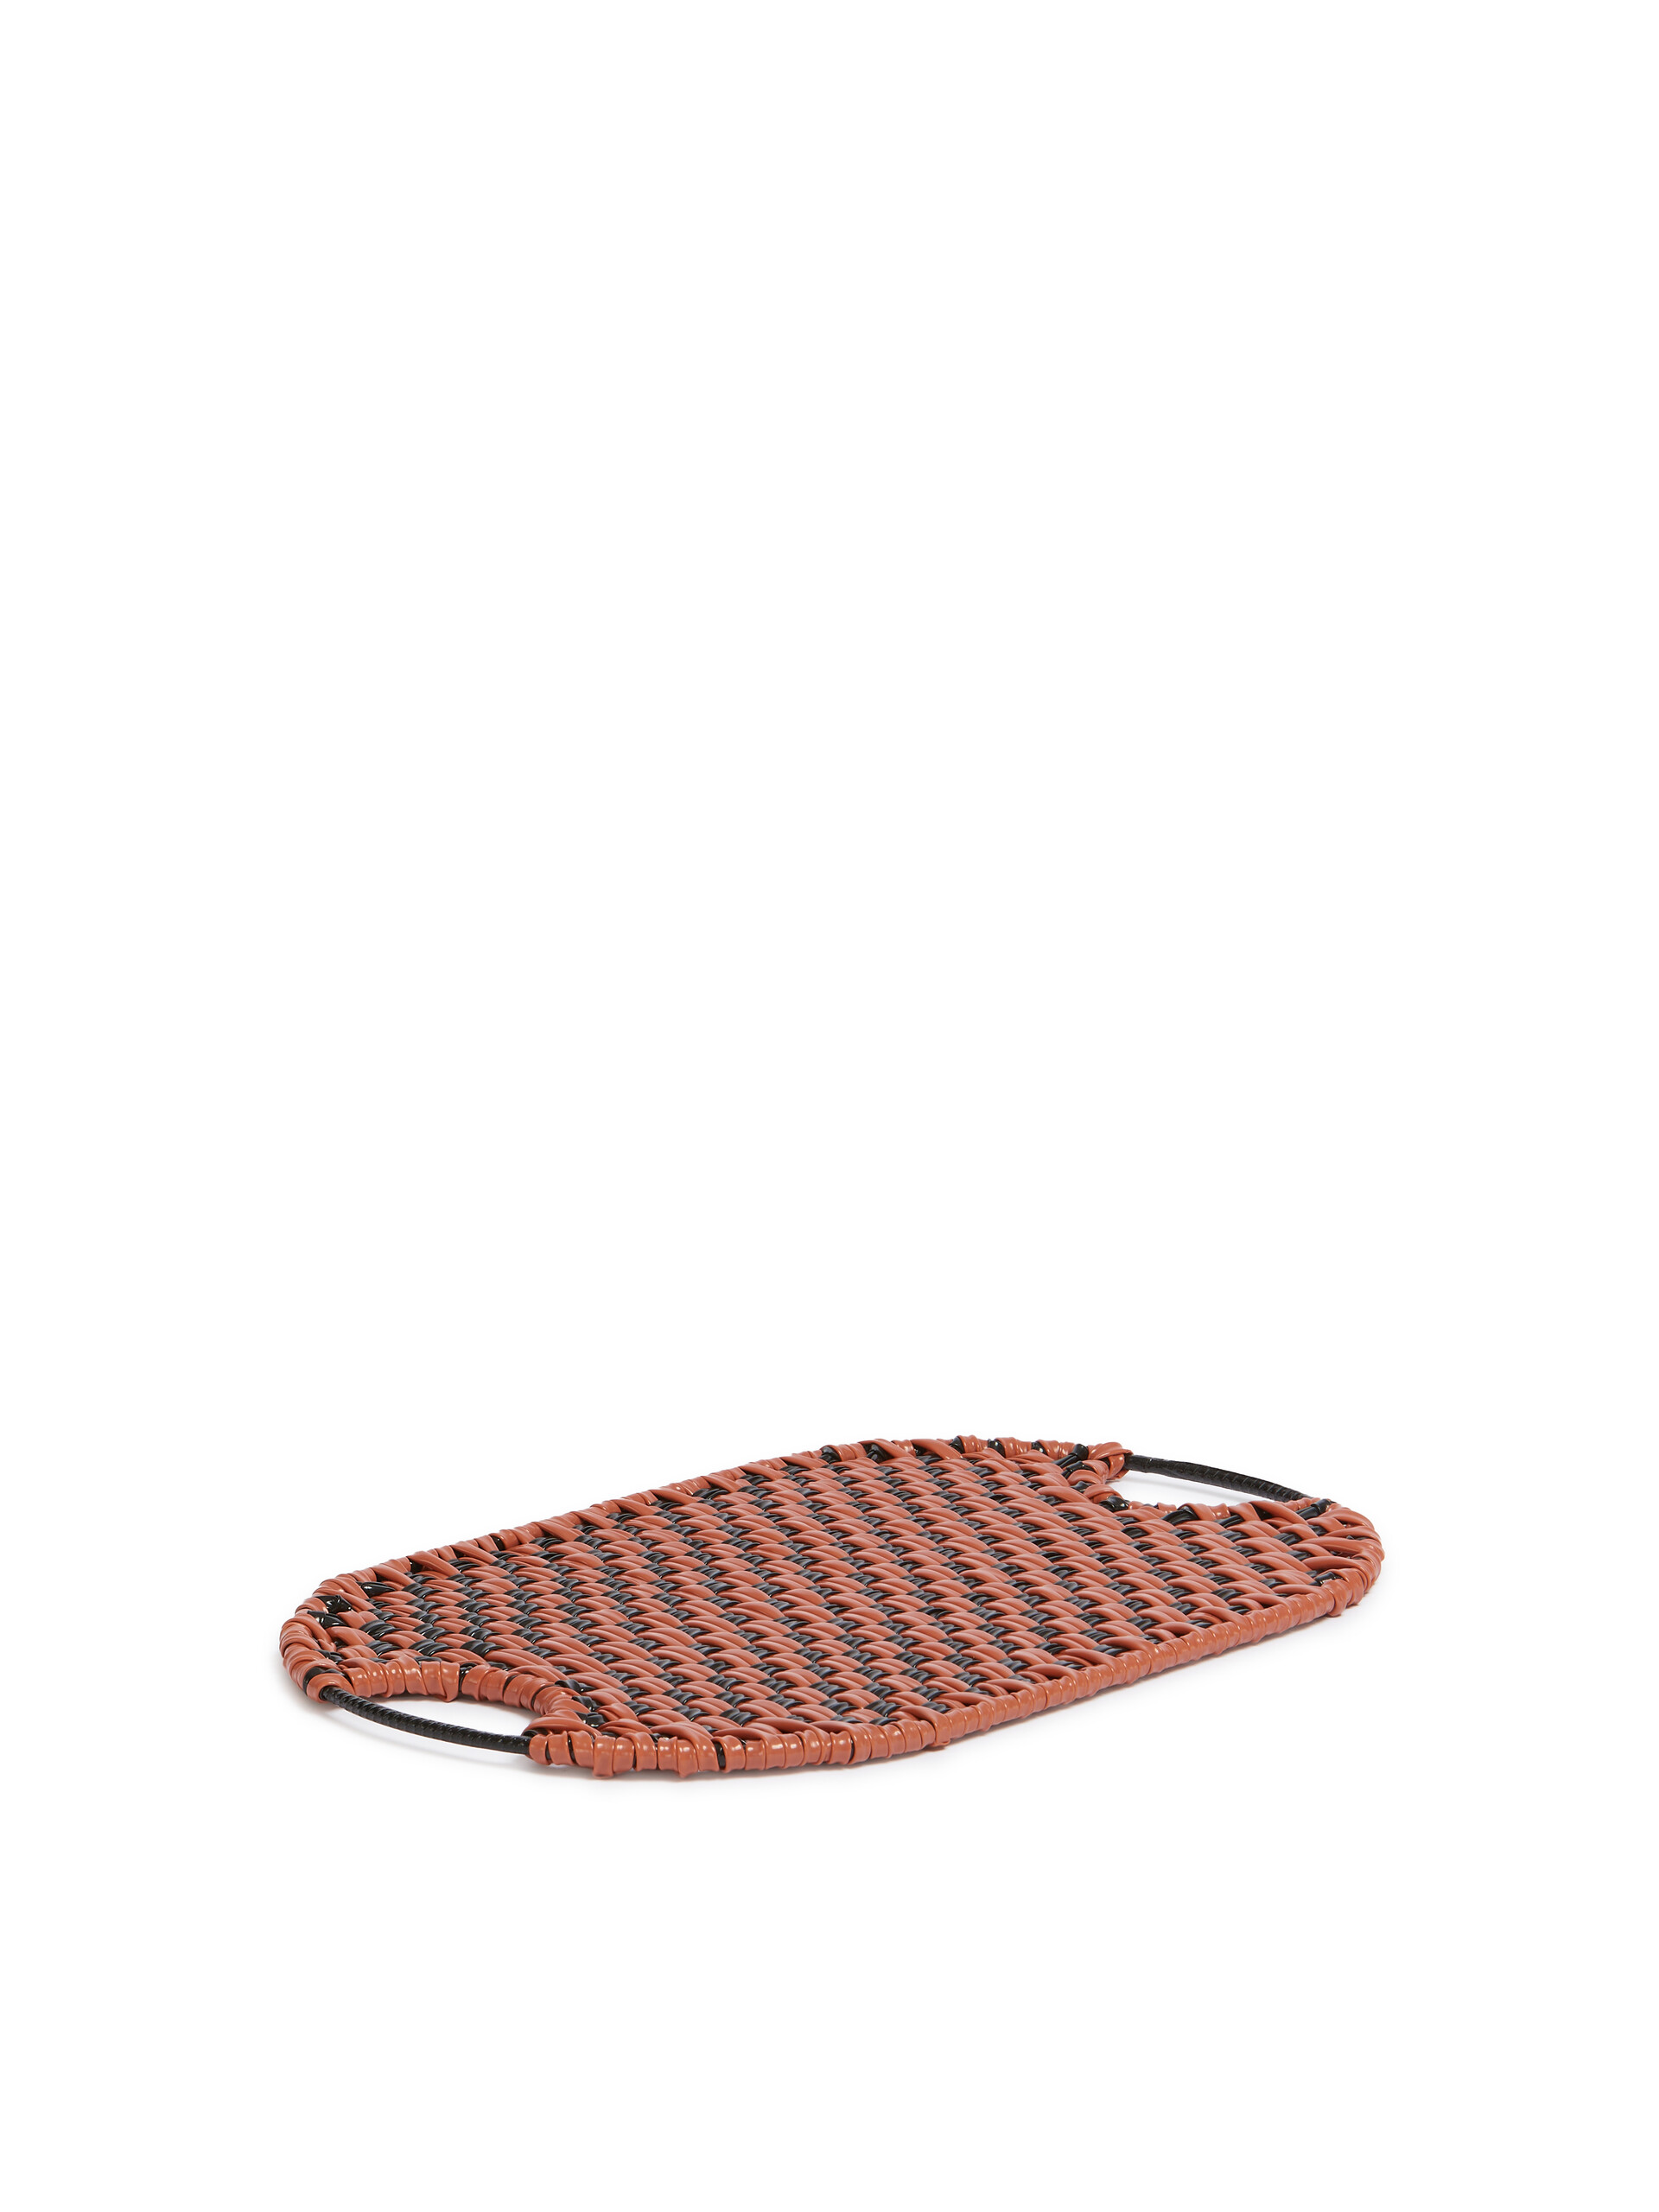 Orange Marni Market Woven Tray - Accessories - Image 2